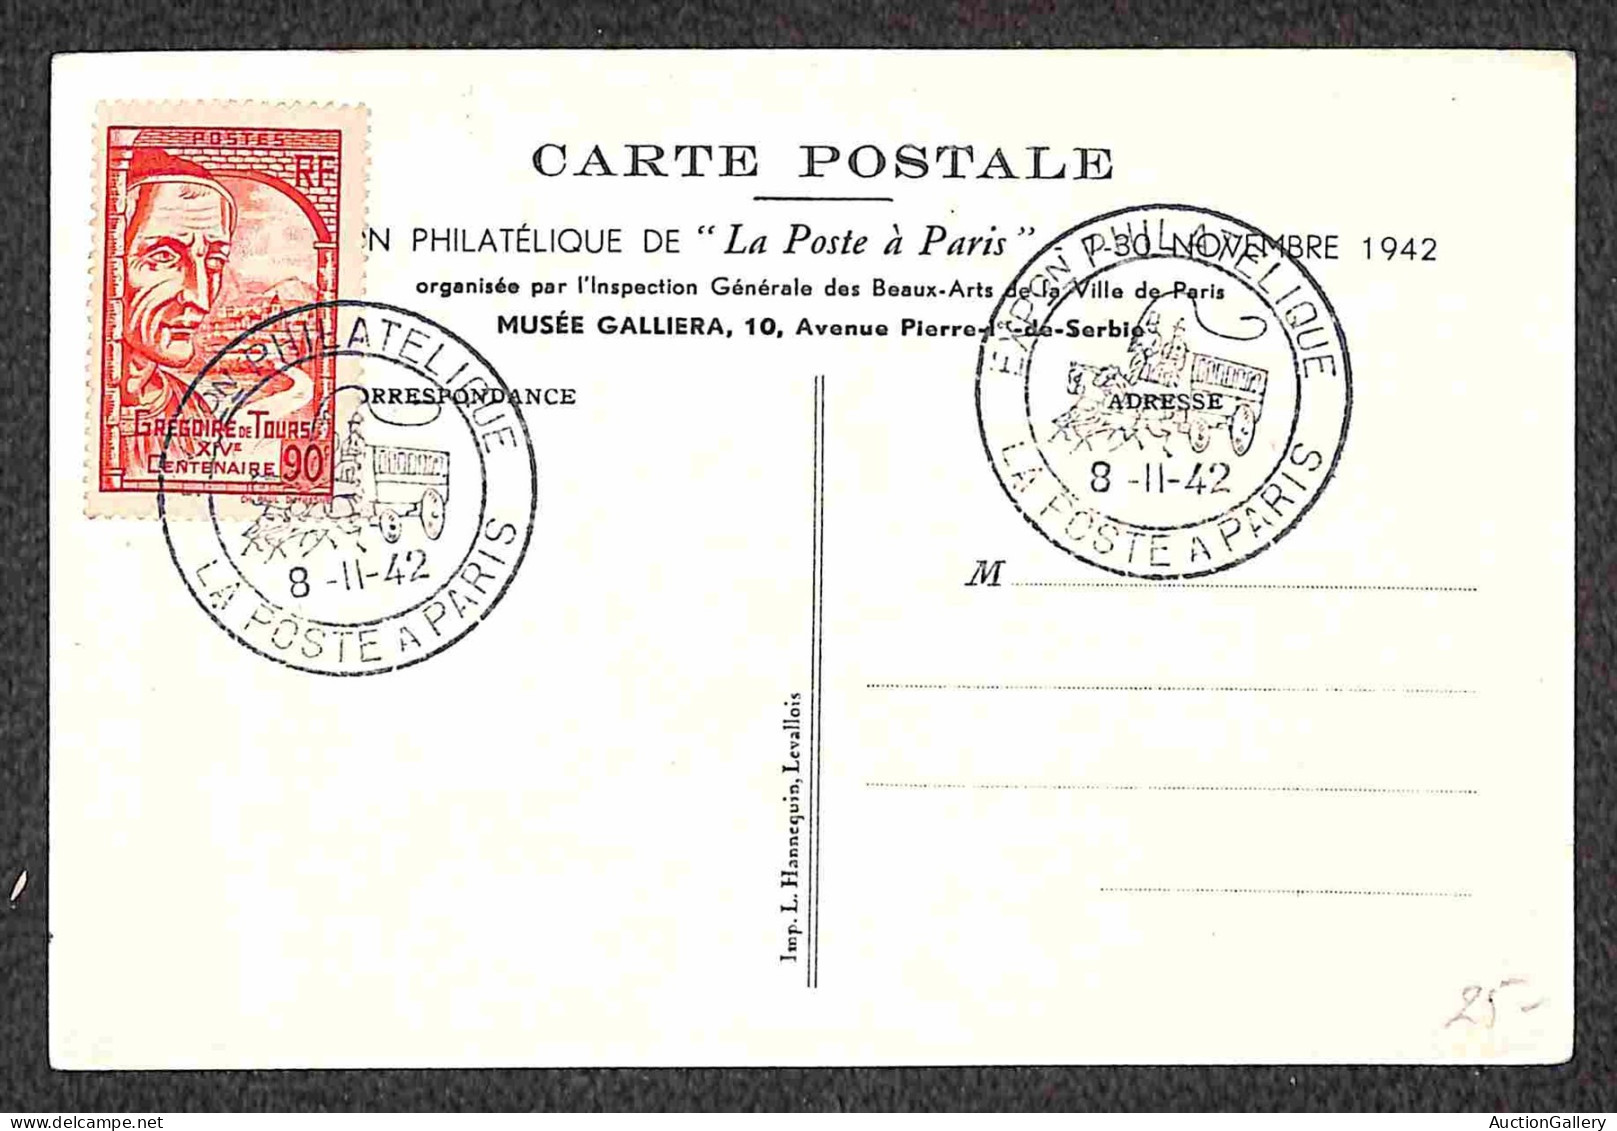 Europa - Francia - 1942 - Sei cartoline + un foglietto - affrancature del periodo e annulli speciali